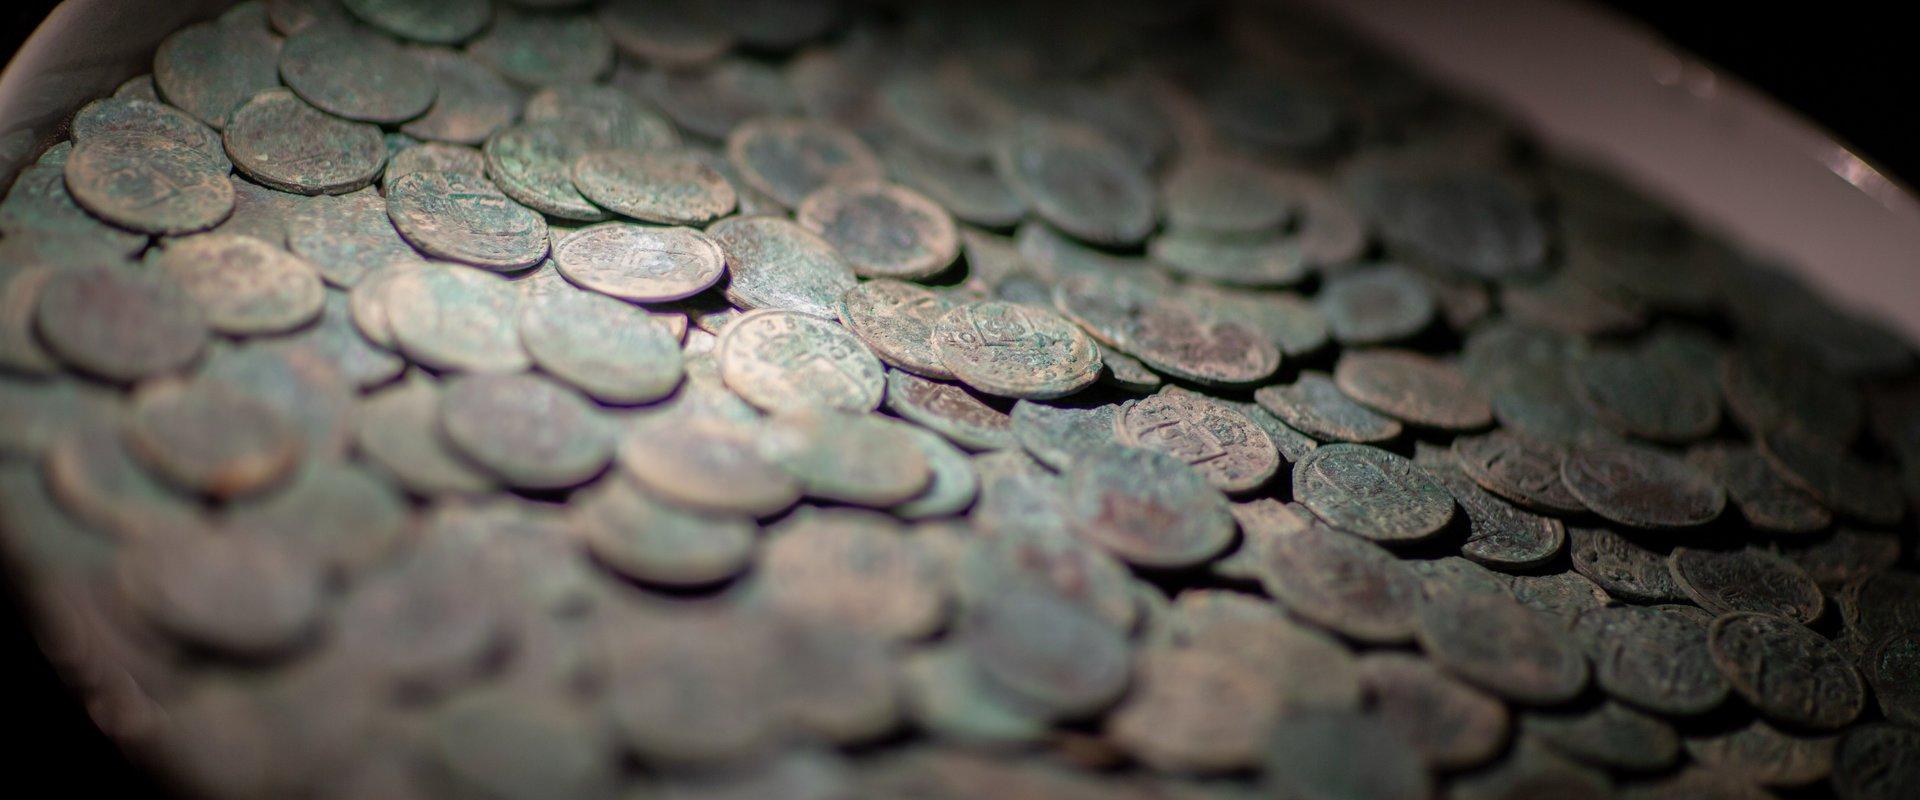 Tartu Universitātes muzeja mantu kambaris, Igaunijas lielākais monētu atradums